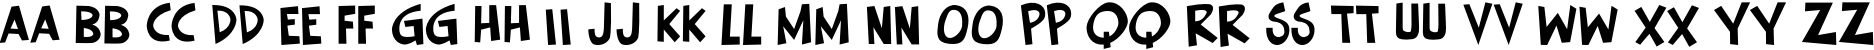 Пример написания английского алфавита шрифтом Keener